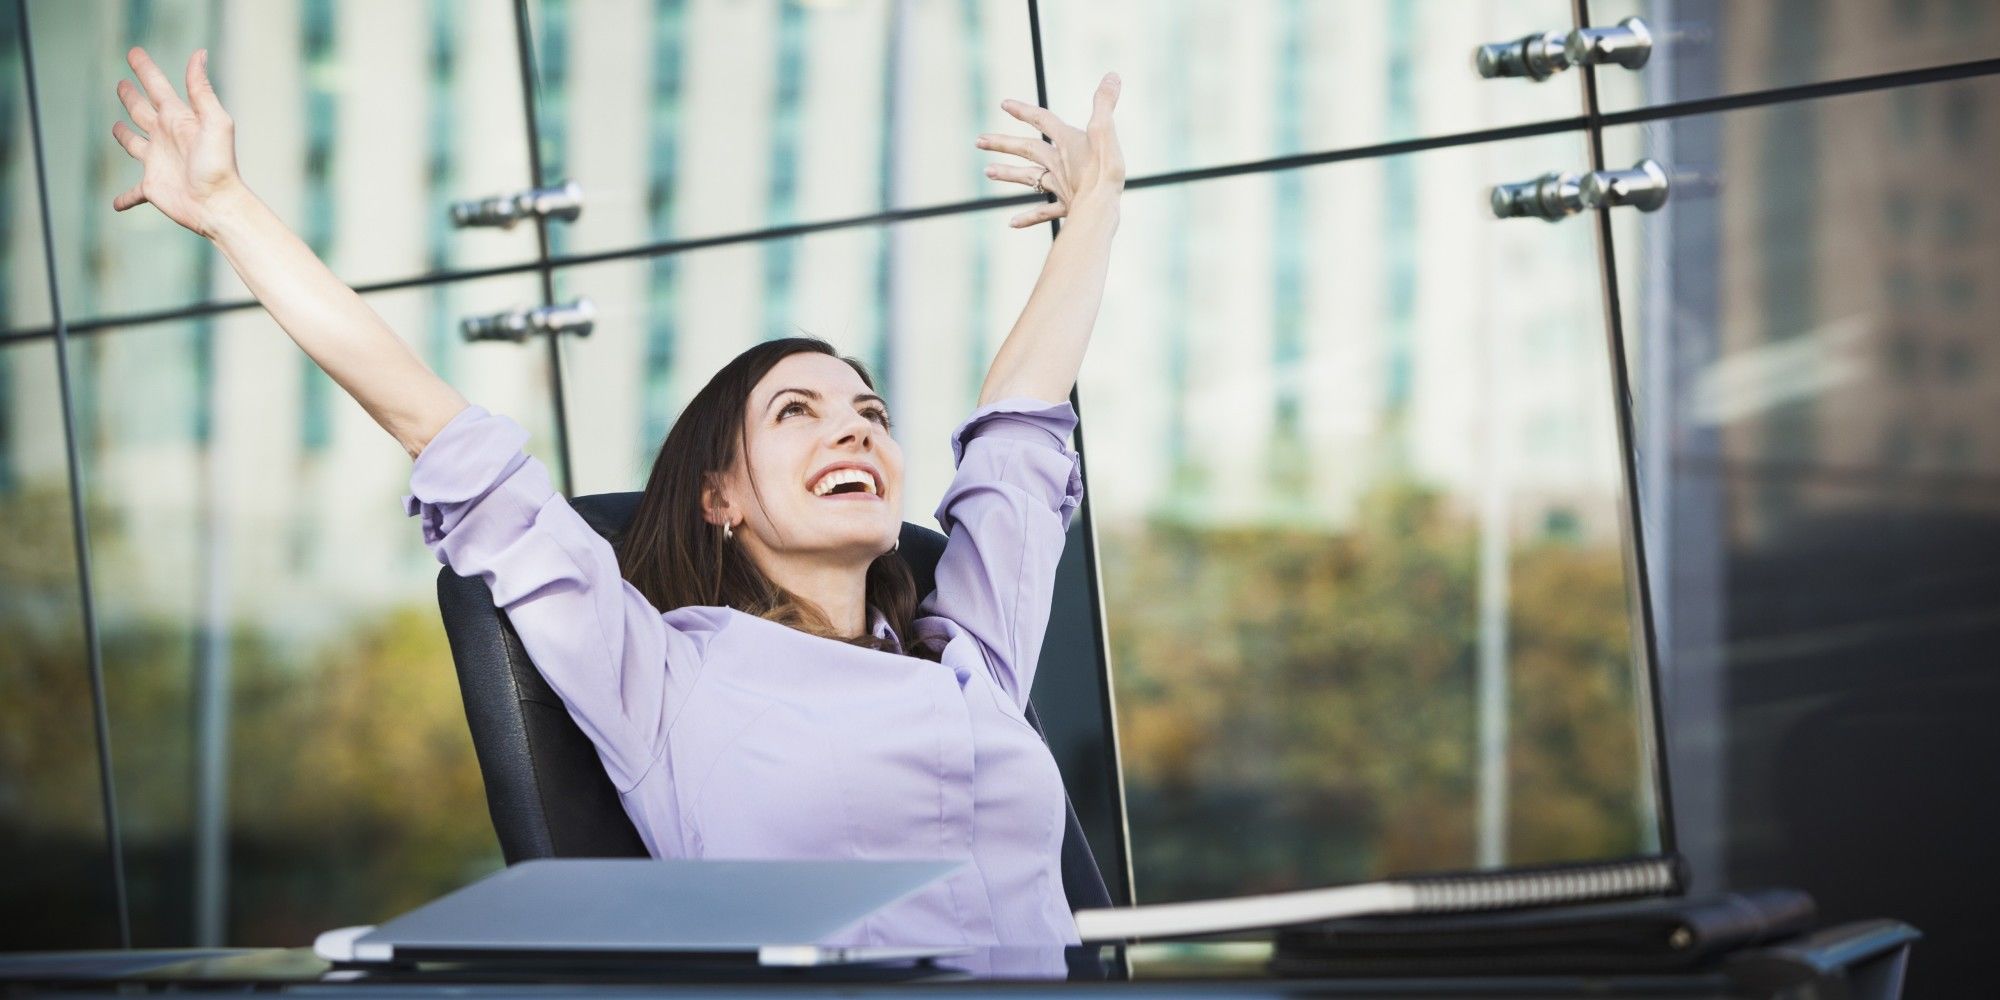 Sering Nyanyi di Kantor? Ini 5 Manfaat Positifnya Buatmu